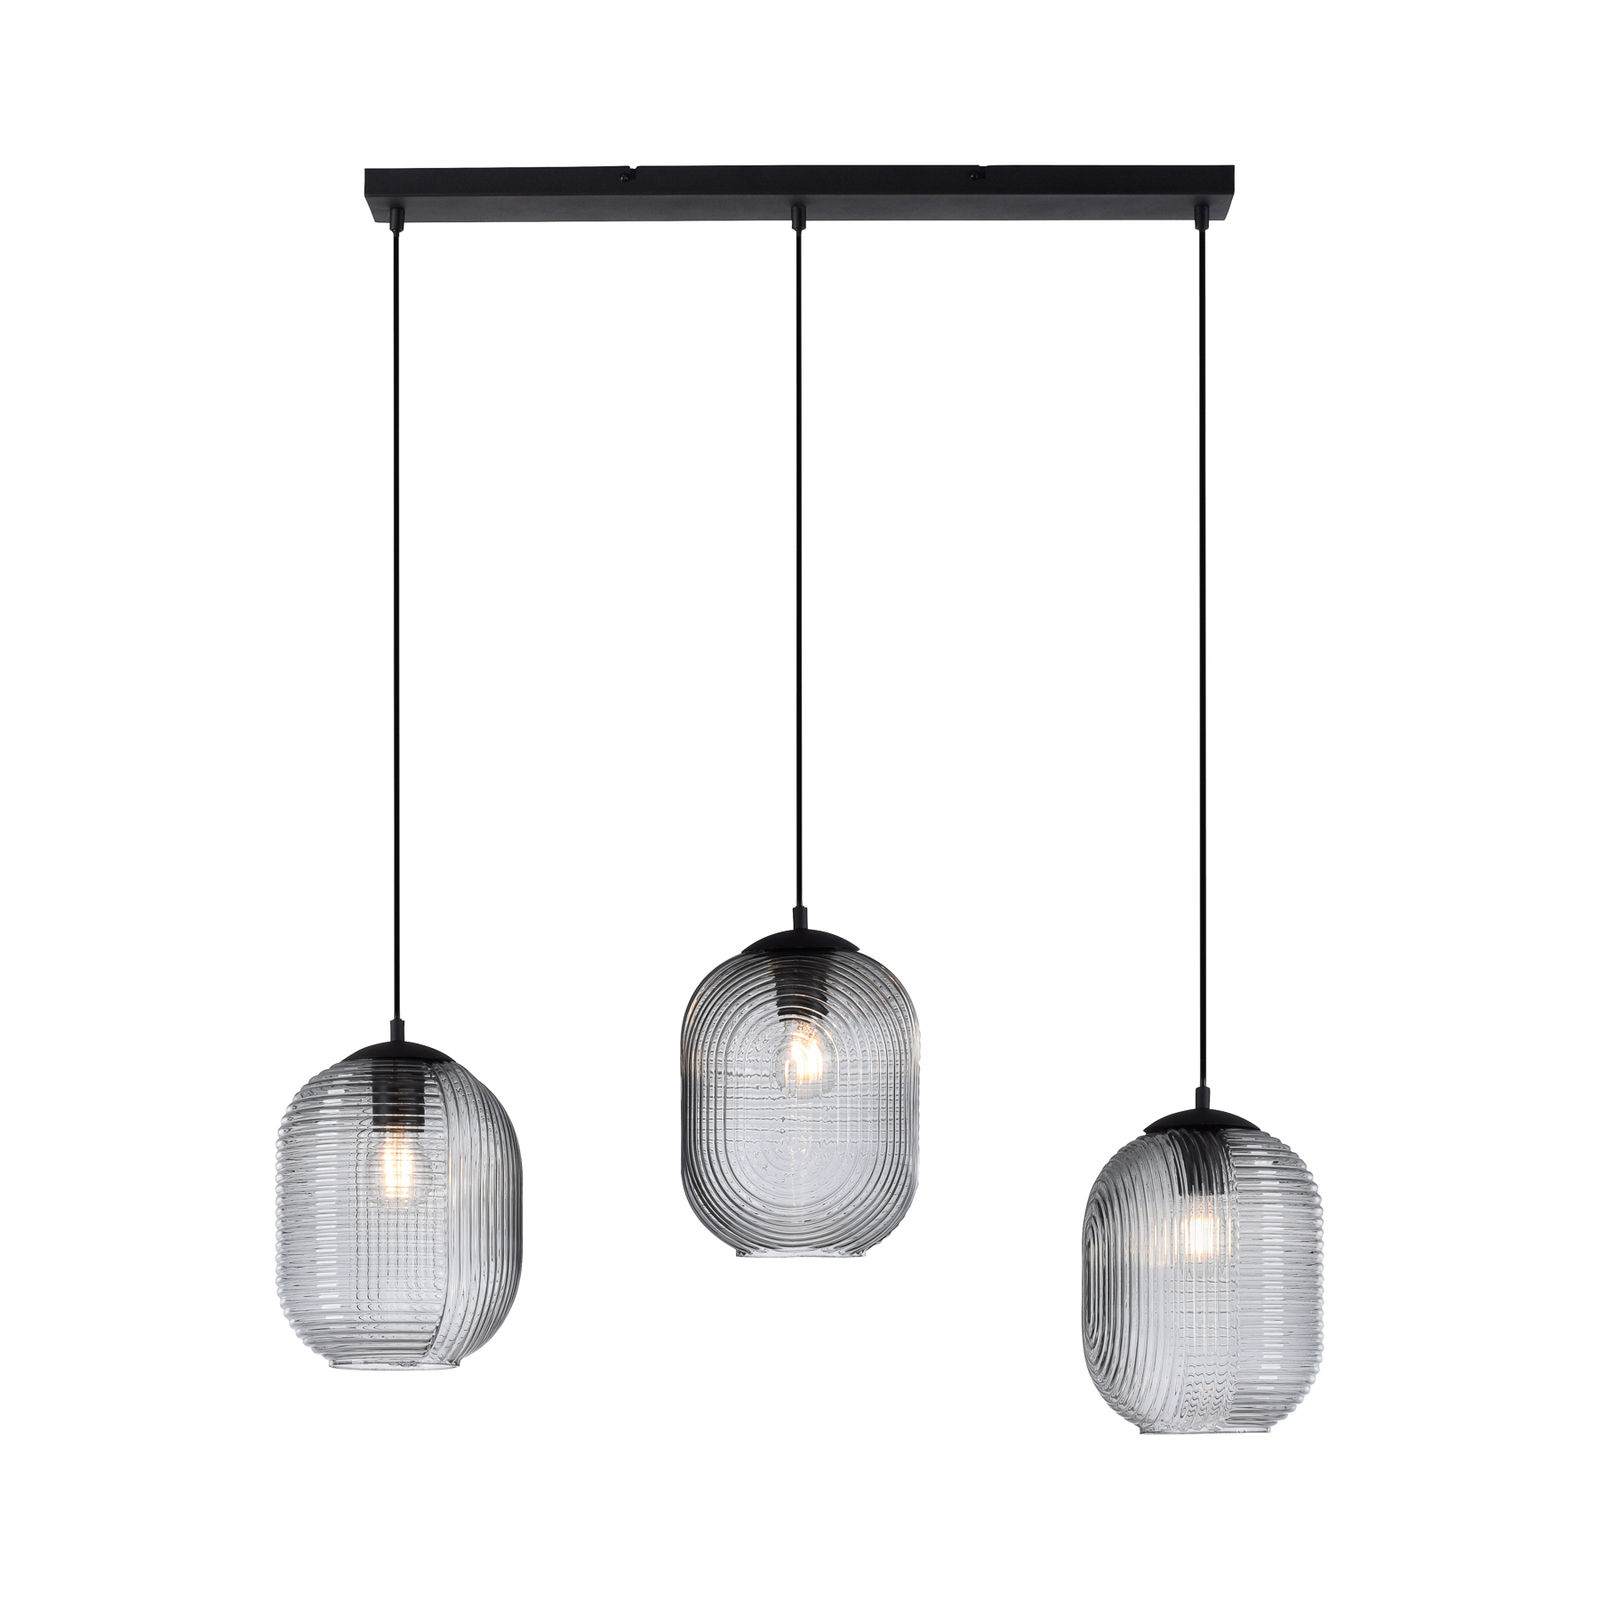 Shitake pendant light, 3-bulb, smoky grey